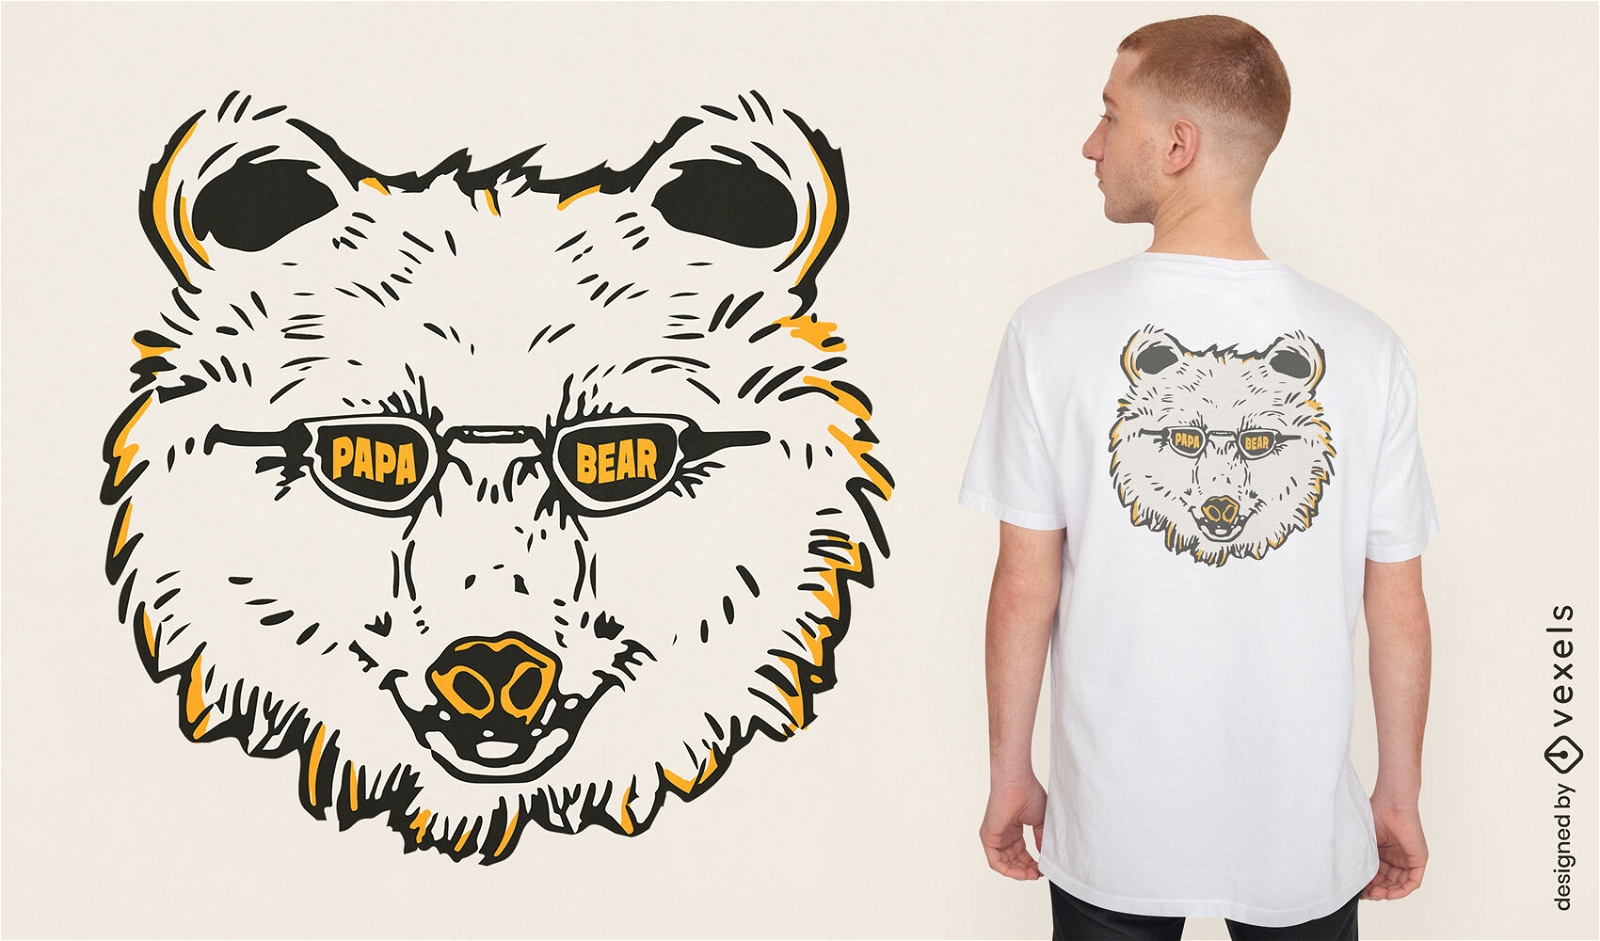 Genial dise?o de camiseta de pap? oso con gafas de sol.